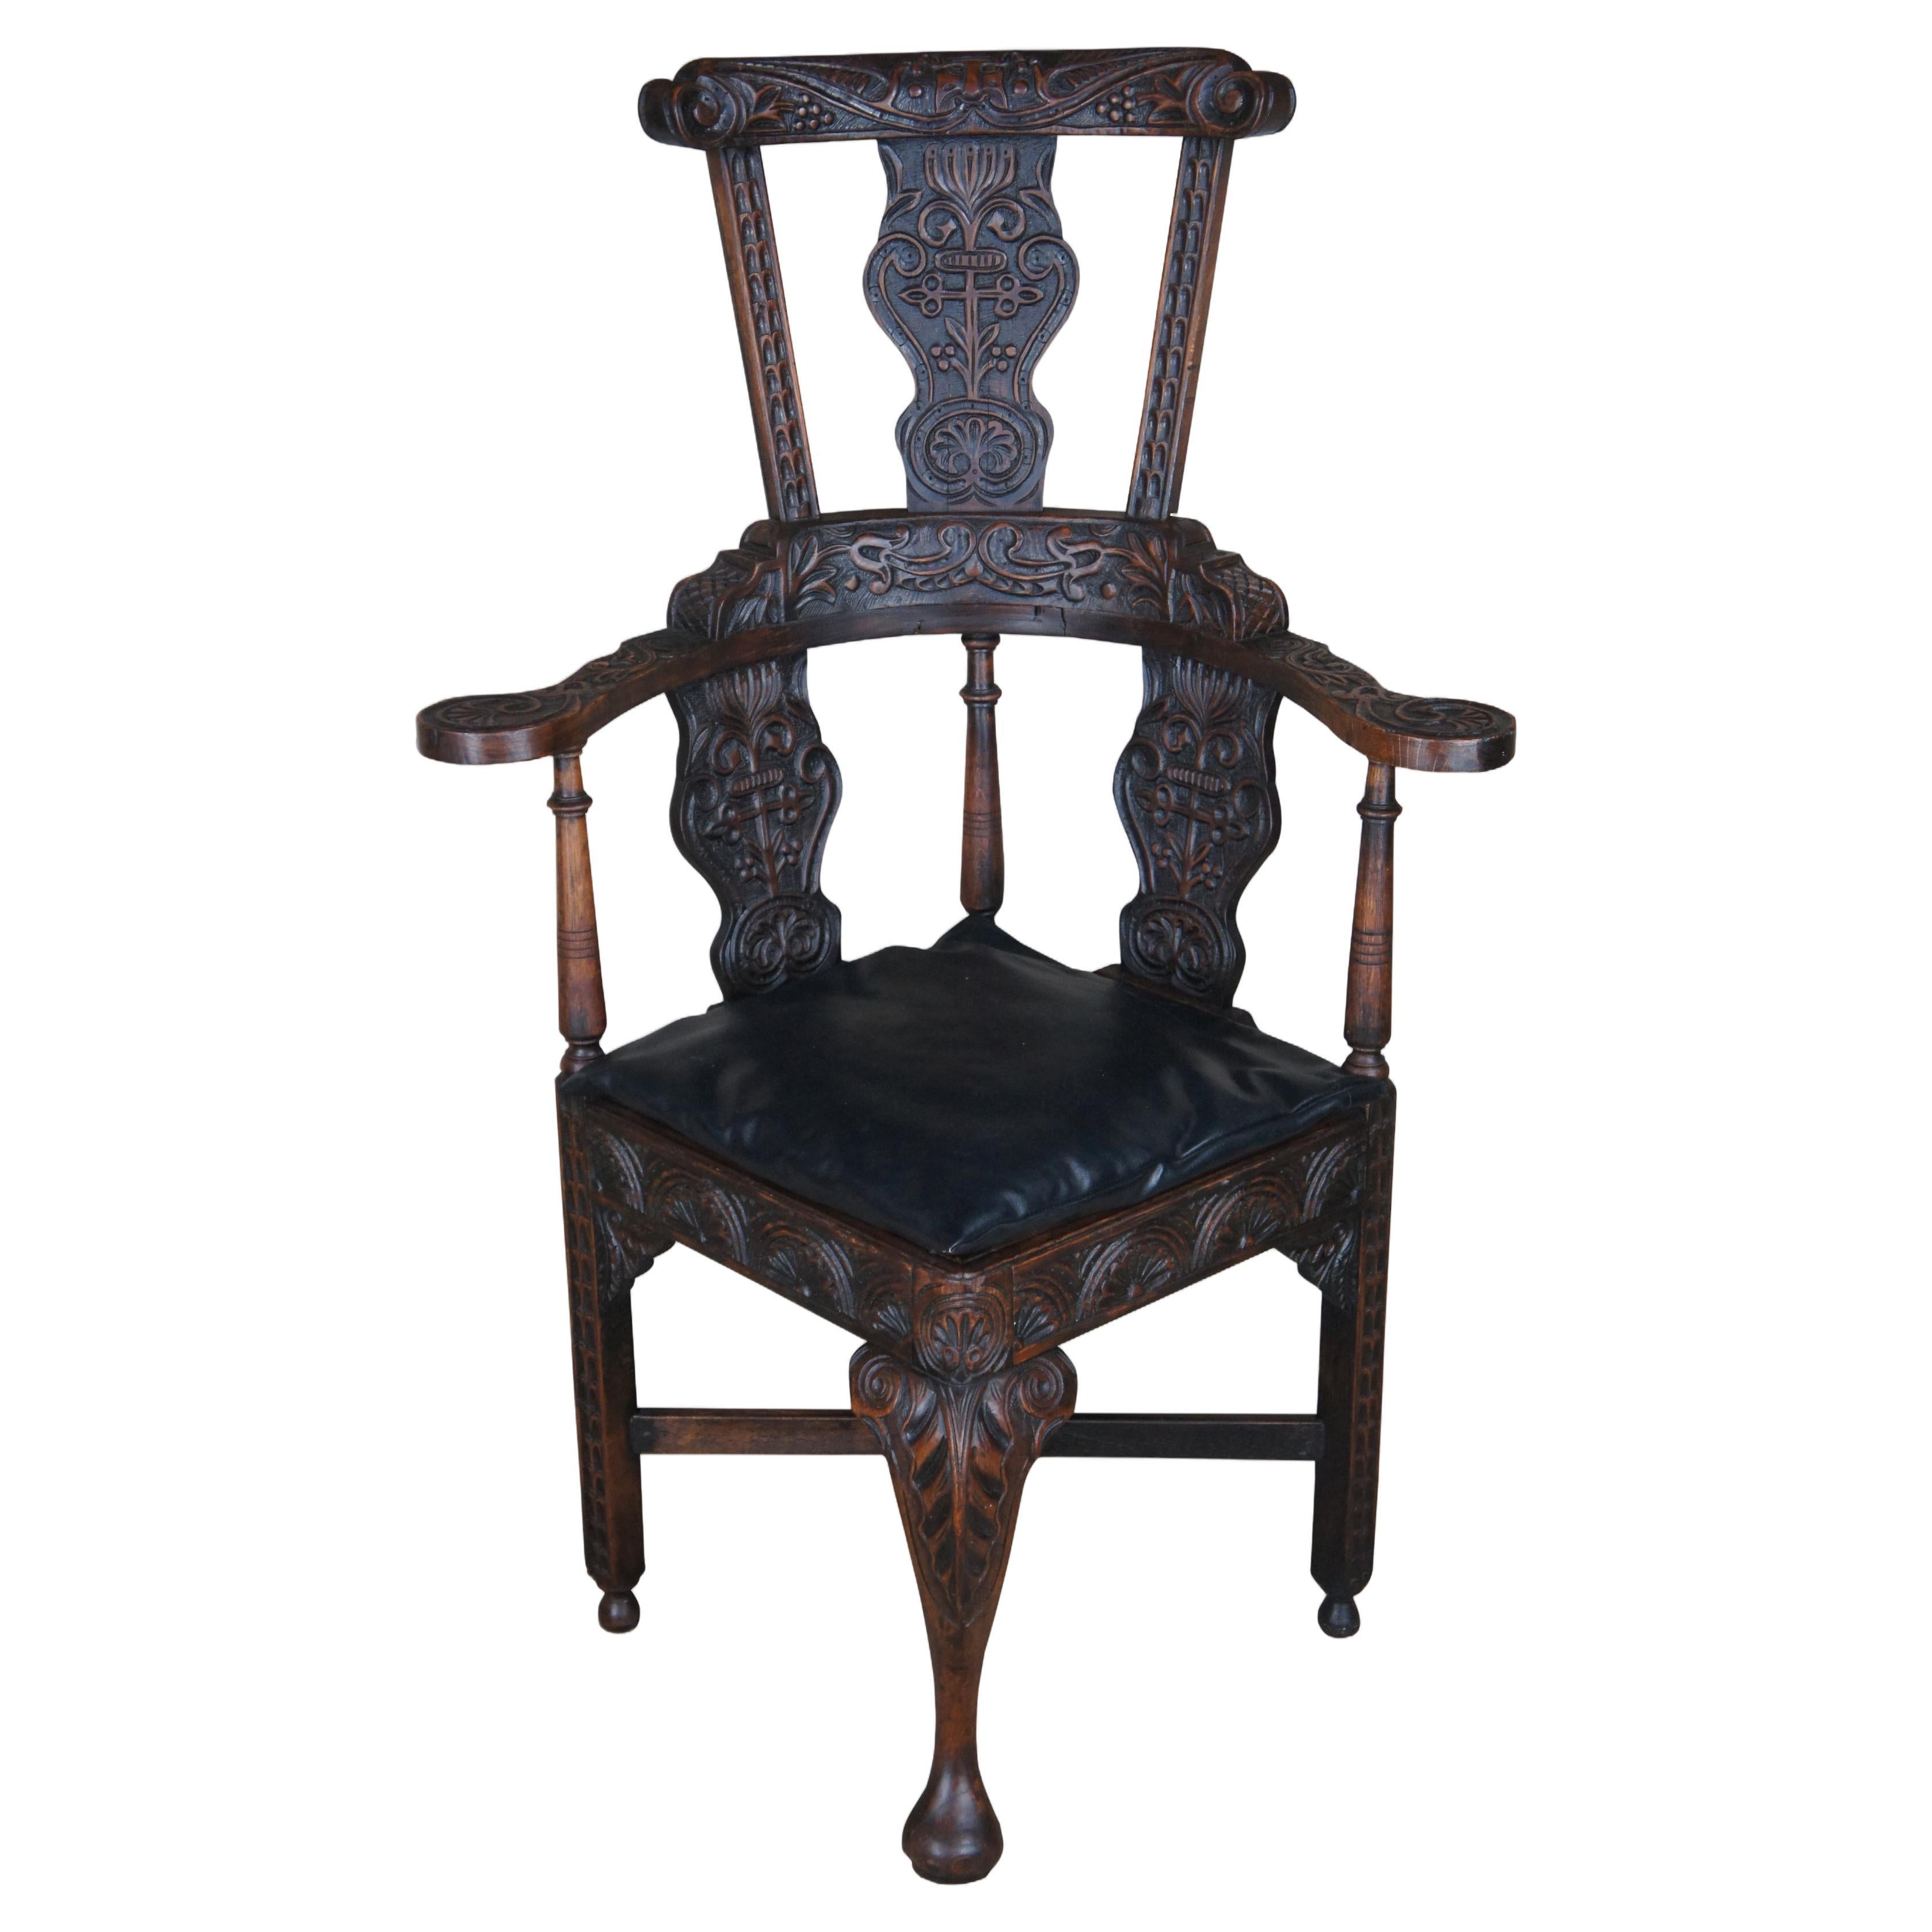 Antique fauteuil d'angle anglais Yorkshire Wainscot en chêne à dossier haut trône 47 po.